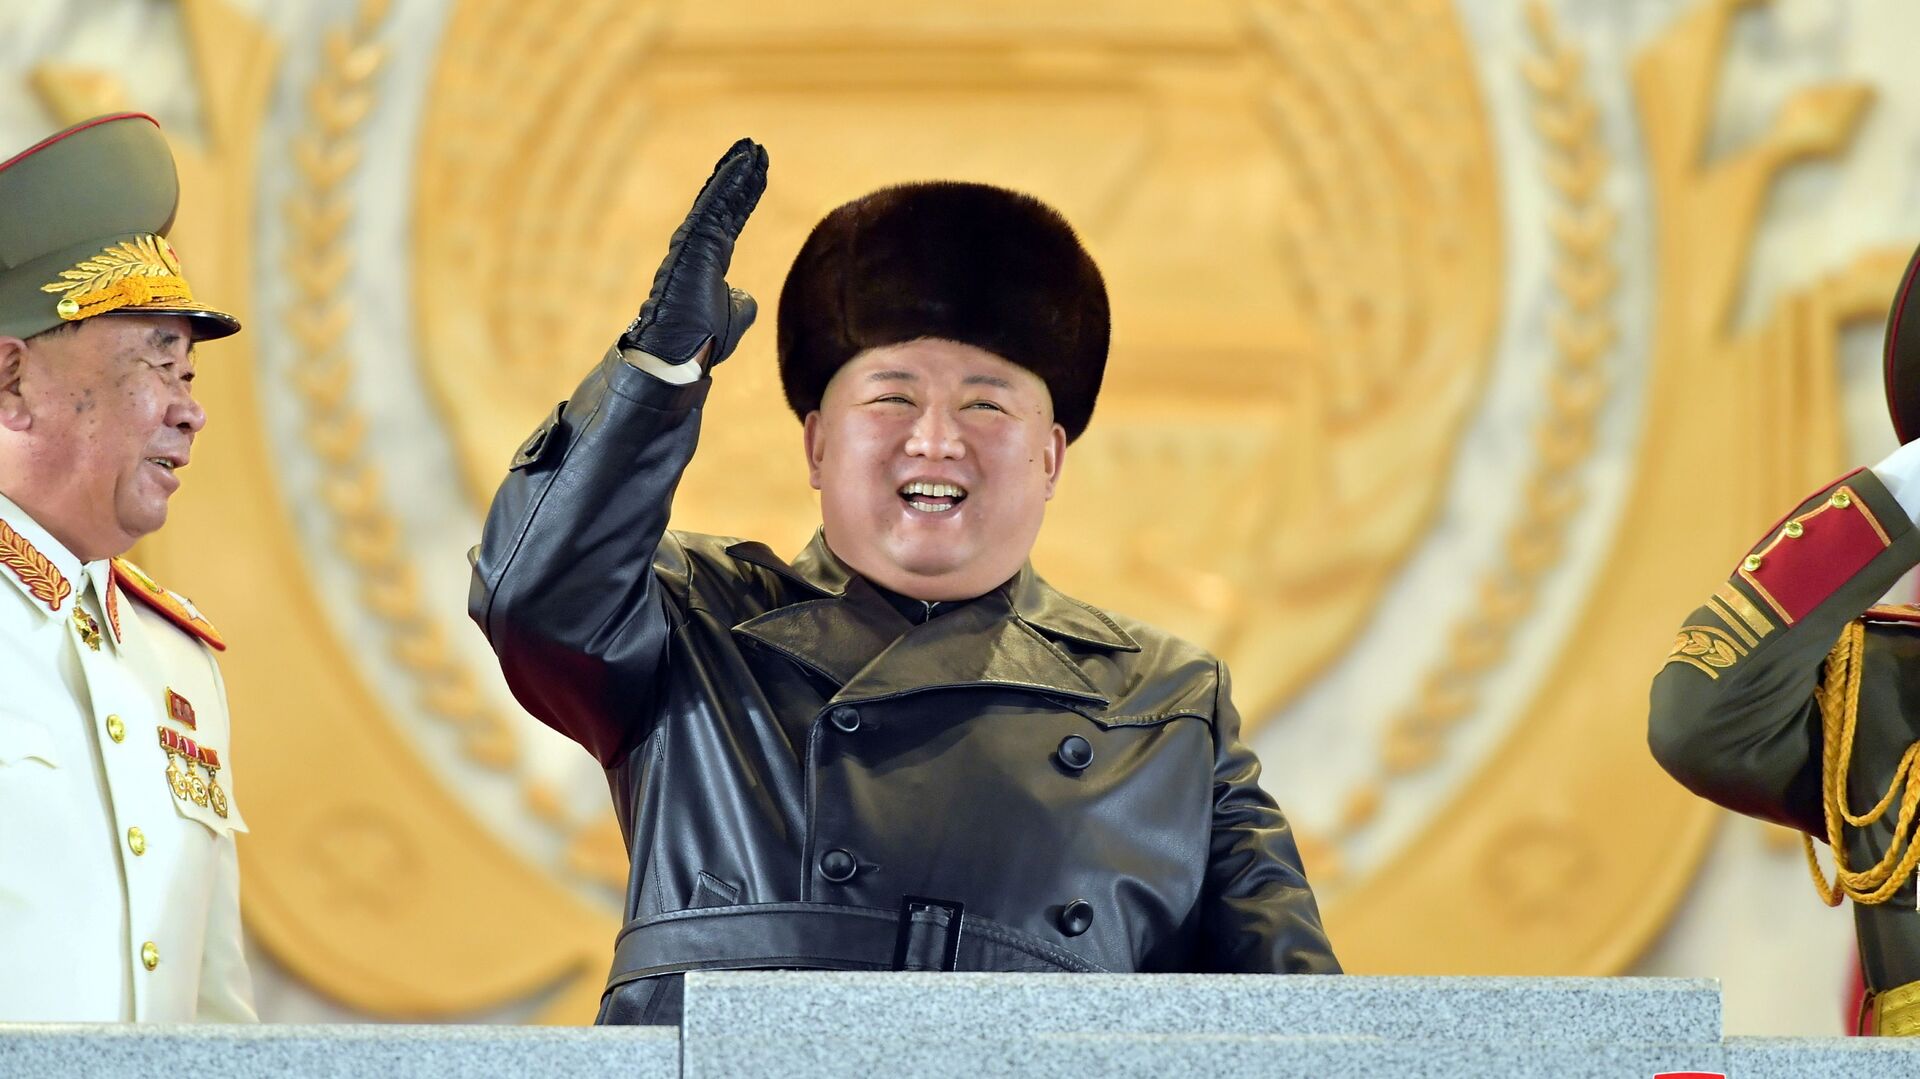 العرض العسكري بمناسبة المؤتمر الثامن لحزب العمال الكوري في بيونغ يانغ، كوريا الشمالية  14 يناير 2021 - سبوتنيك عربي, 1920, 27.07.2021